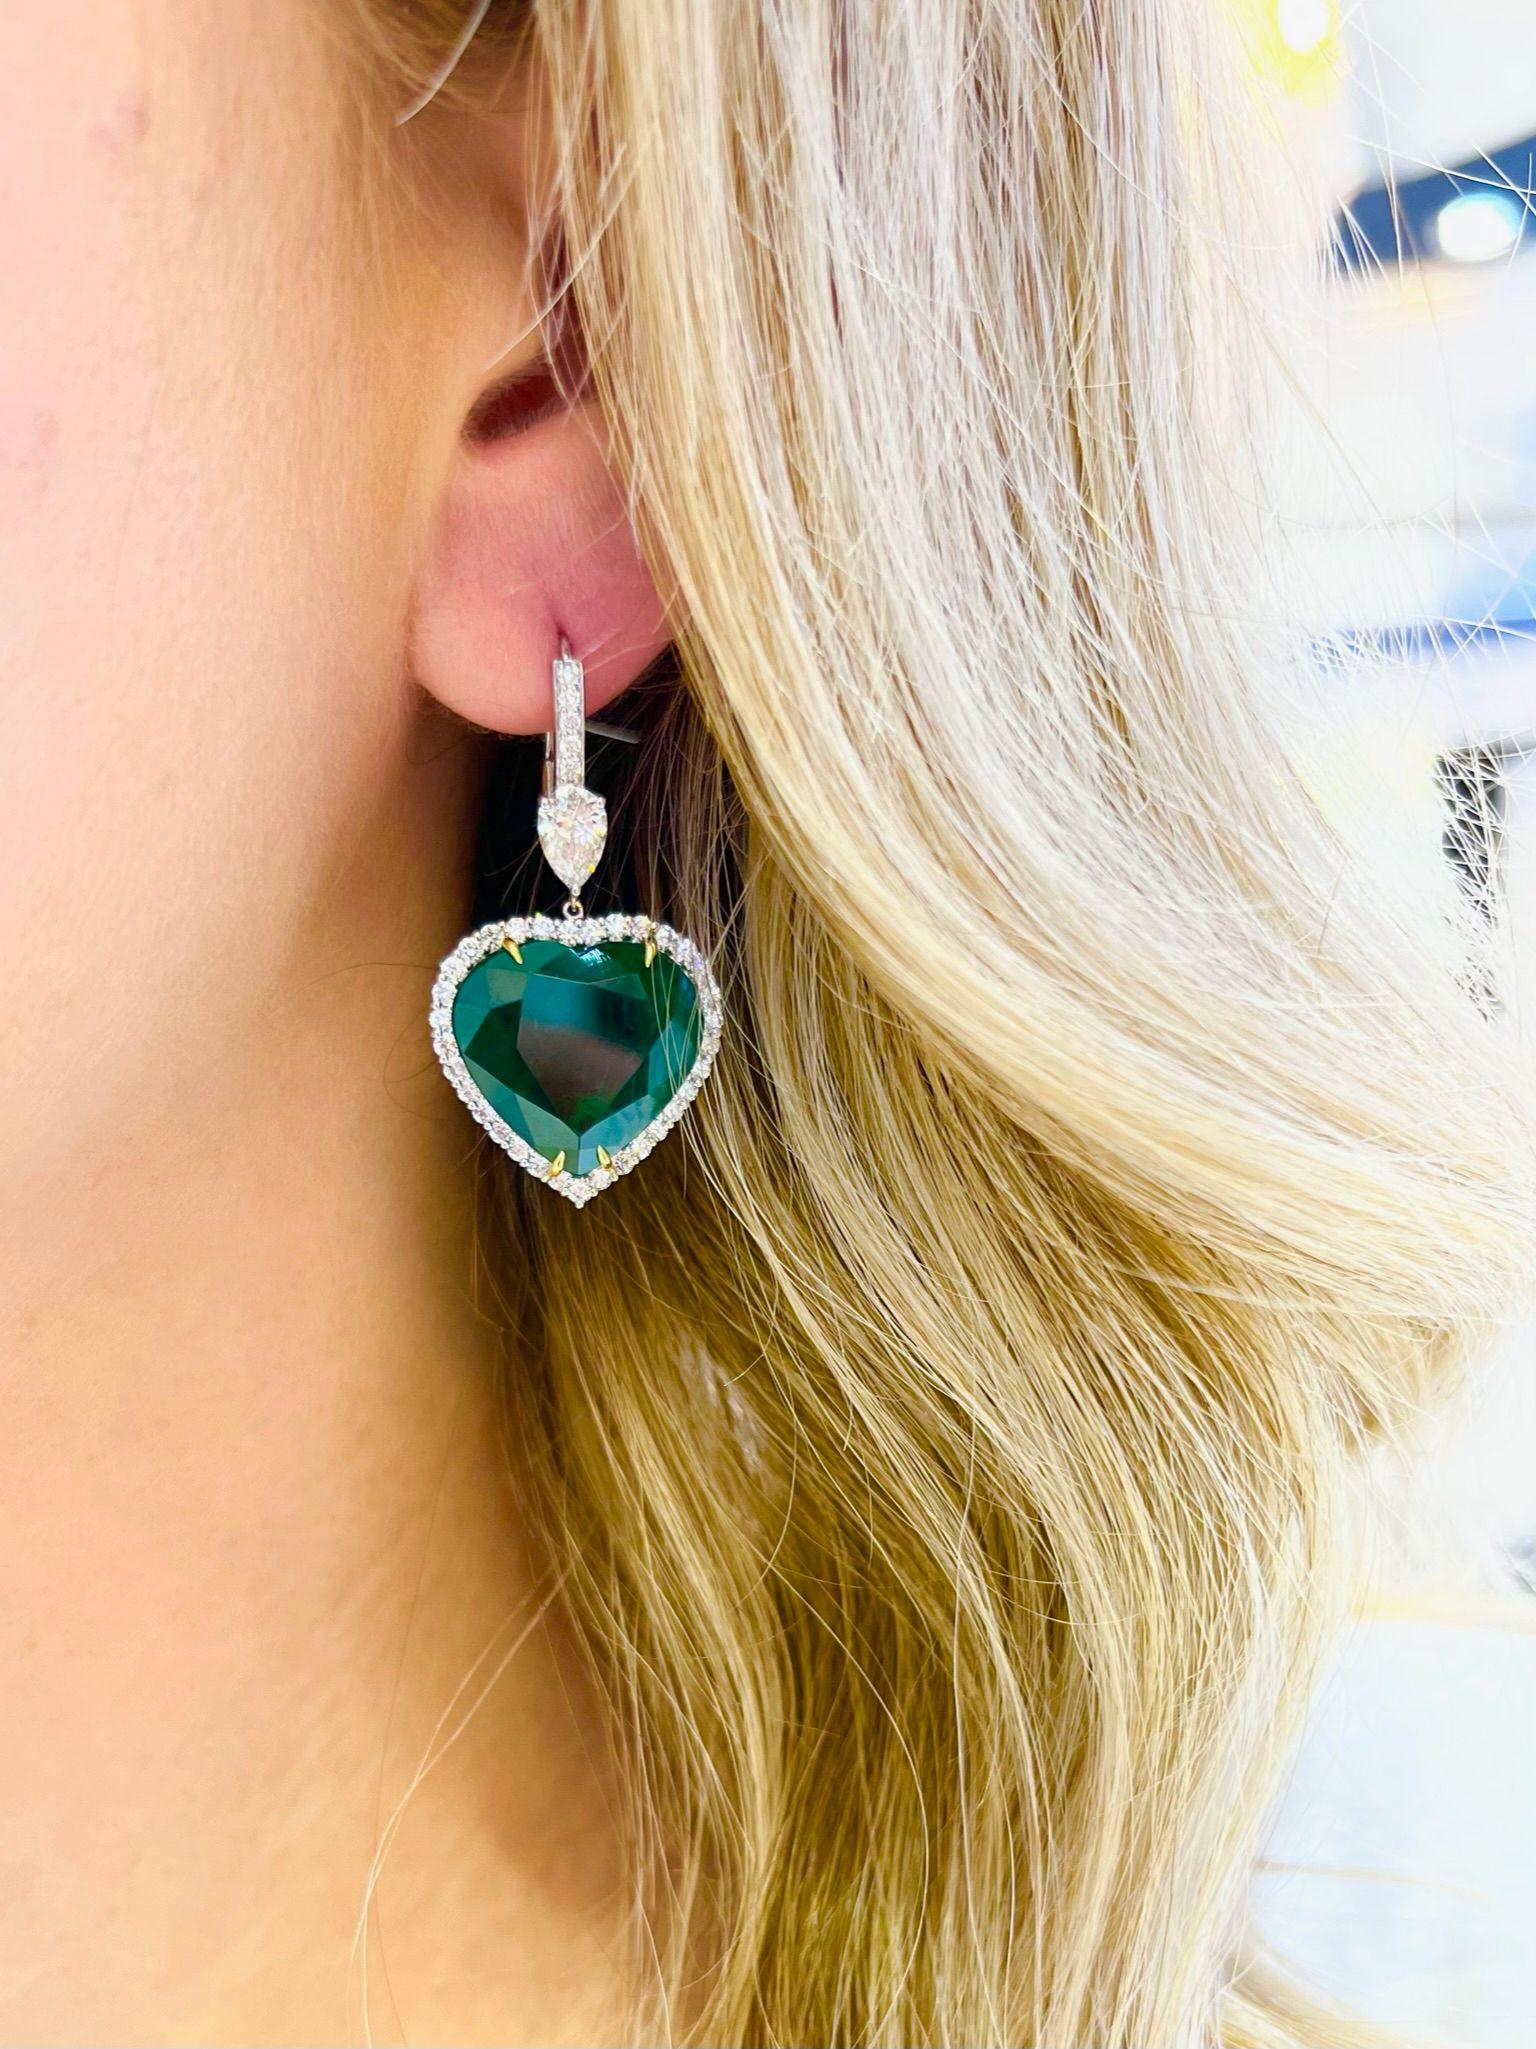 David Rosenberg 30.36 Carat Heart Shape Green Zambian Emerald Diamond Earrings For Sale 1